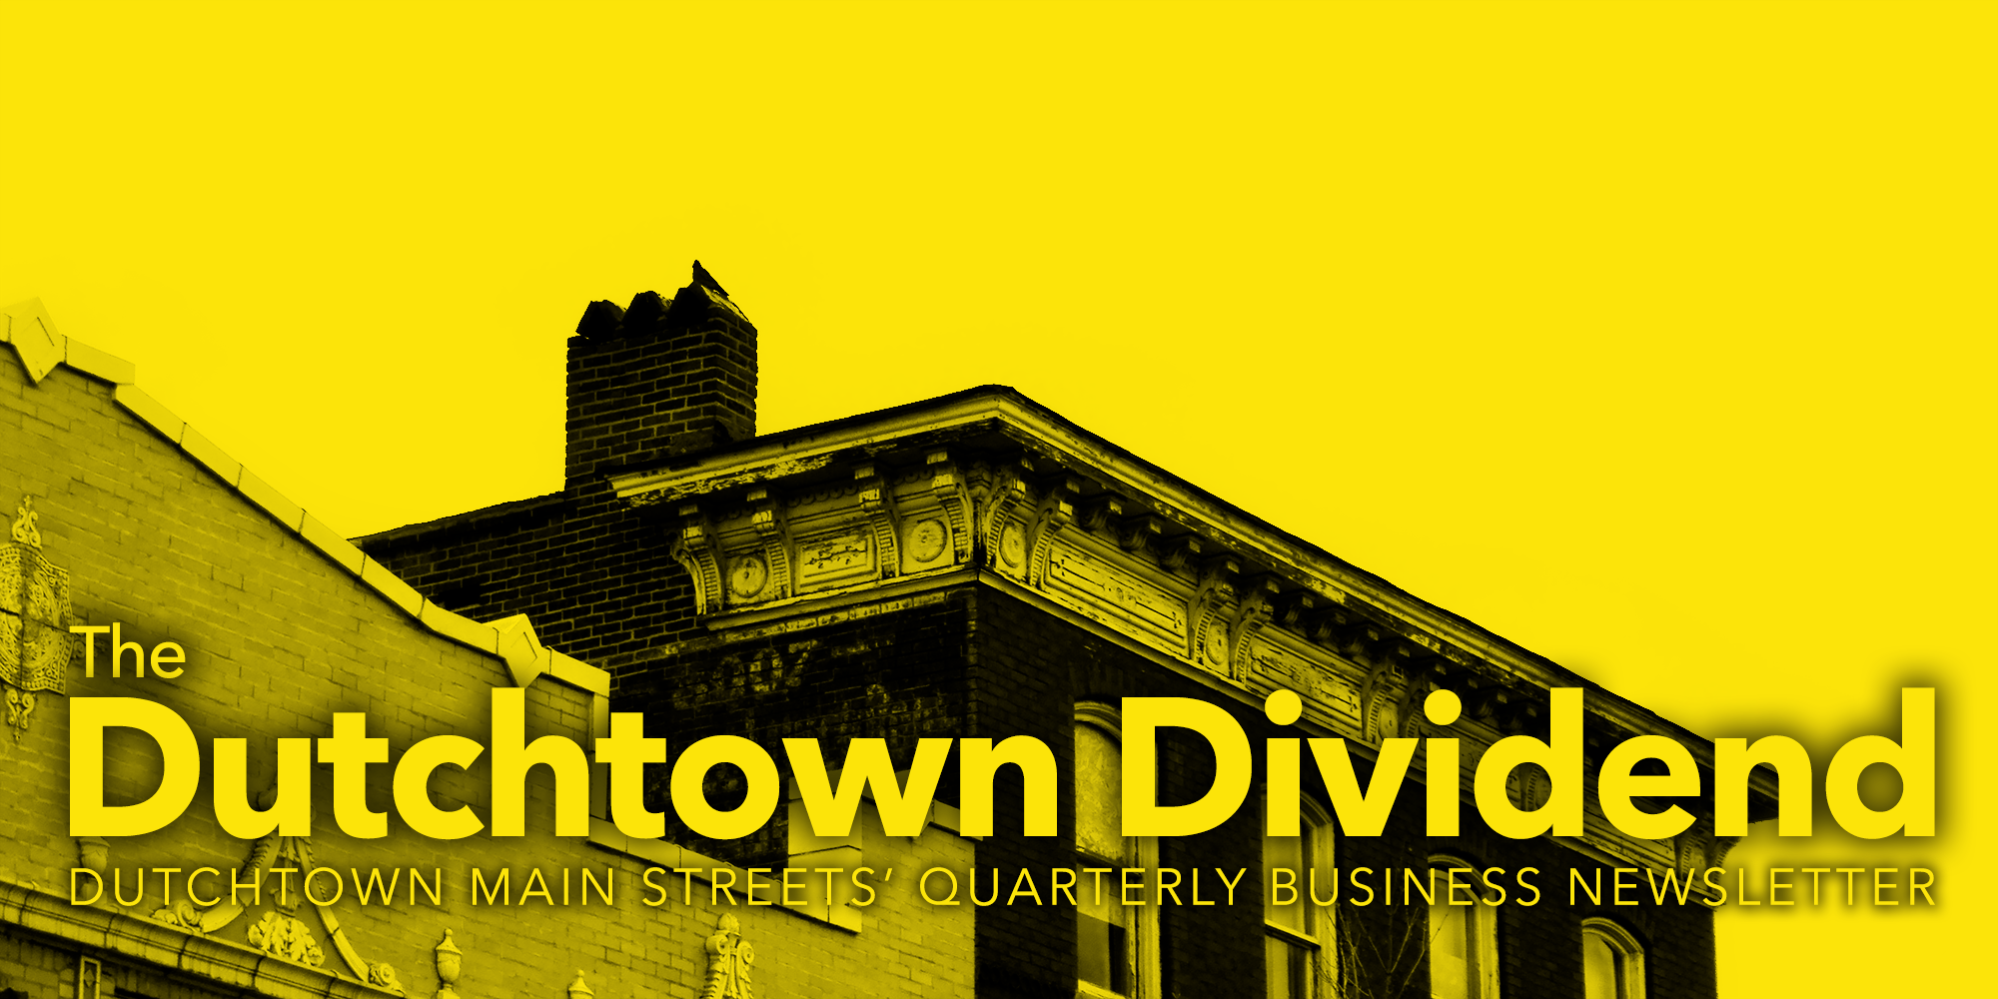 The Dutchtown Dividend, el boletín comercial trimestral de Dutchtown Main Streets.